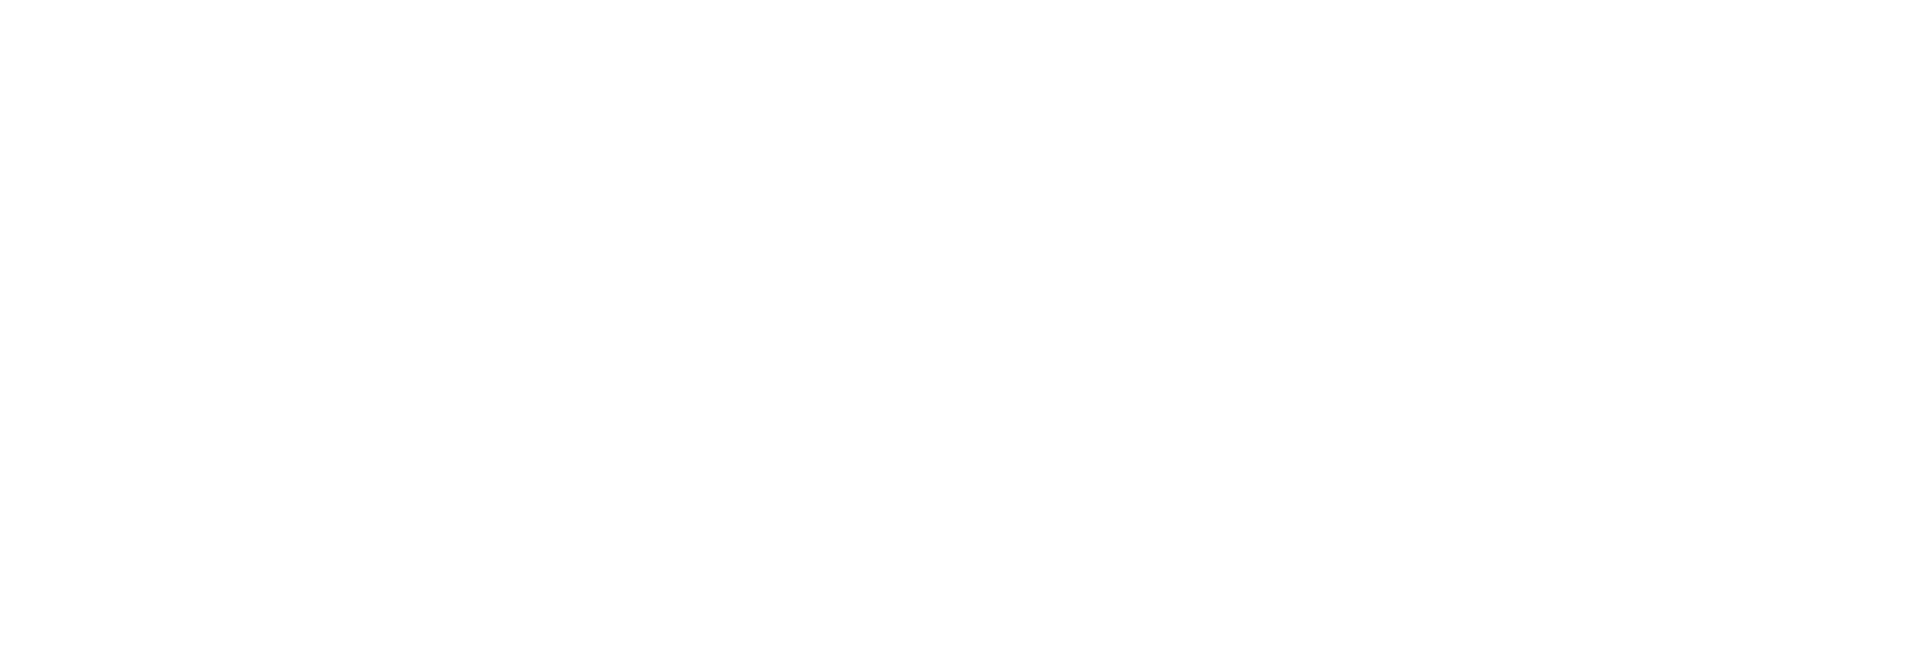 AZAR4 - azar background white - azar4